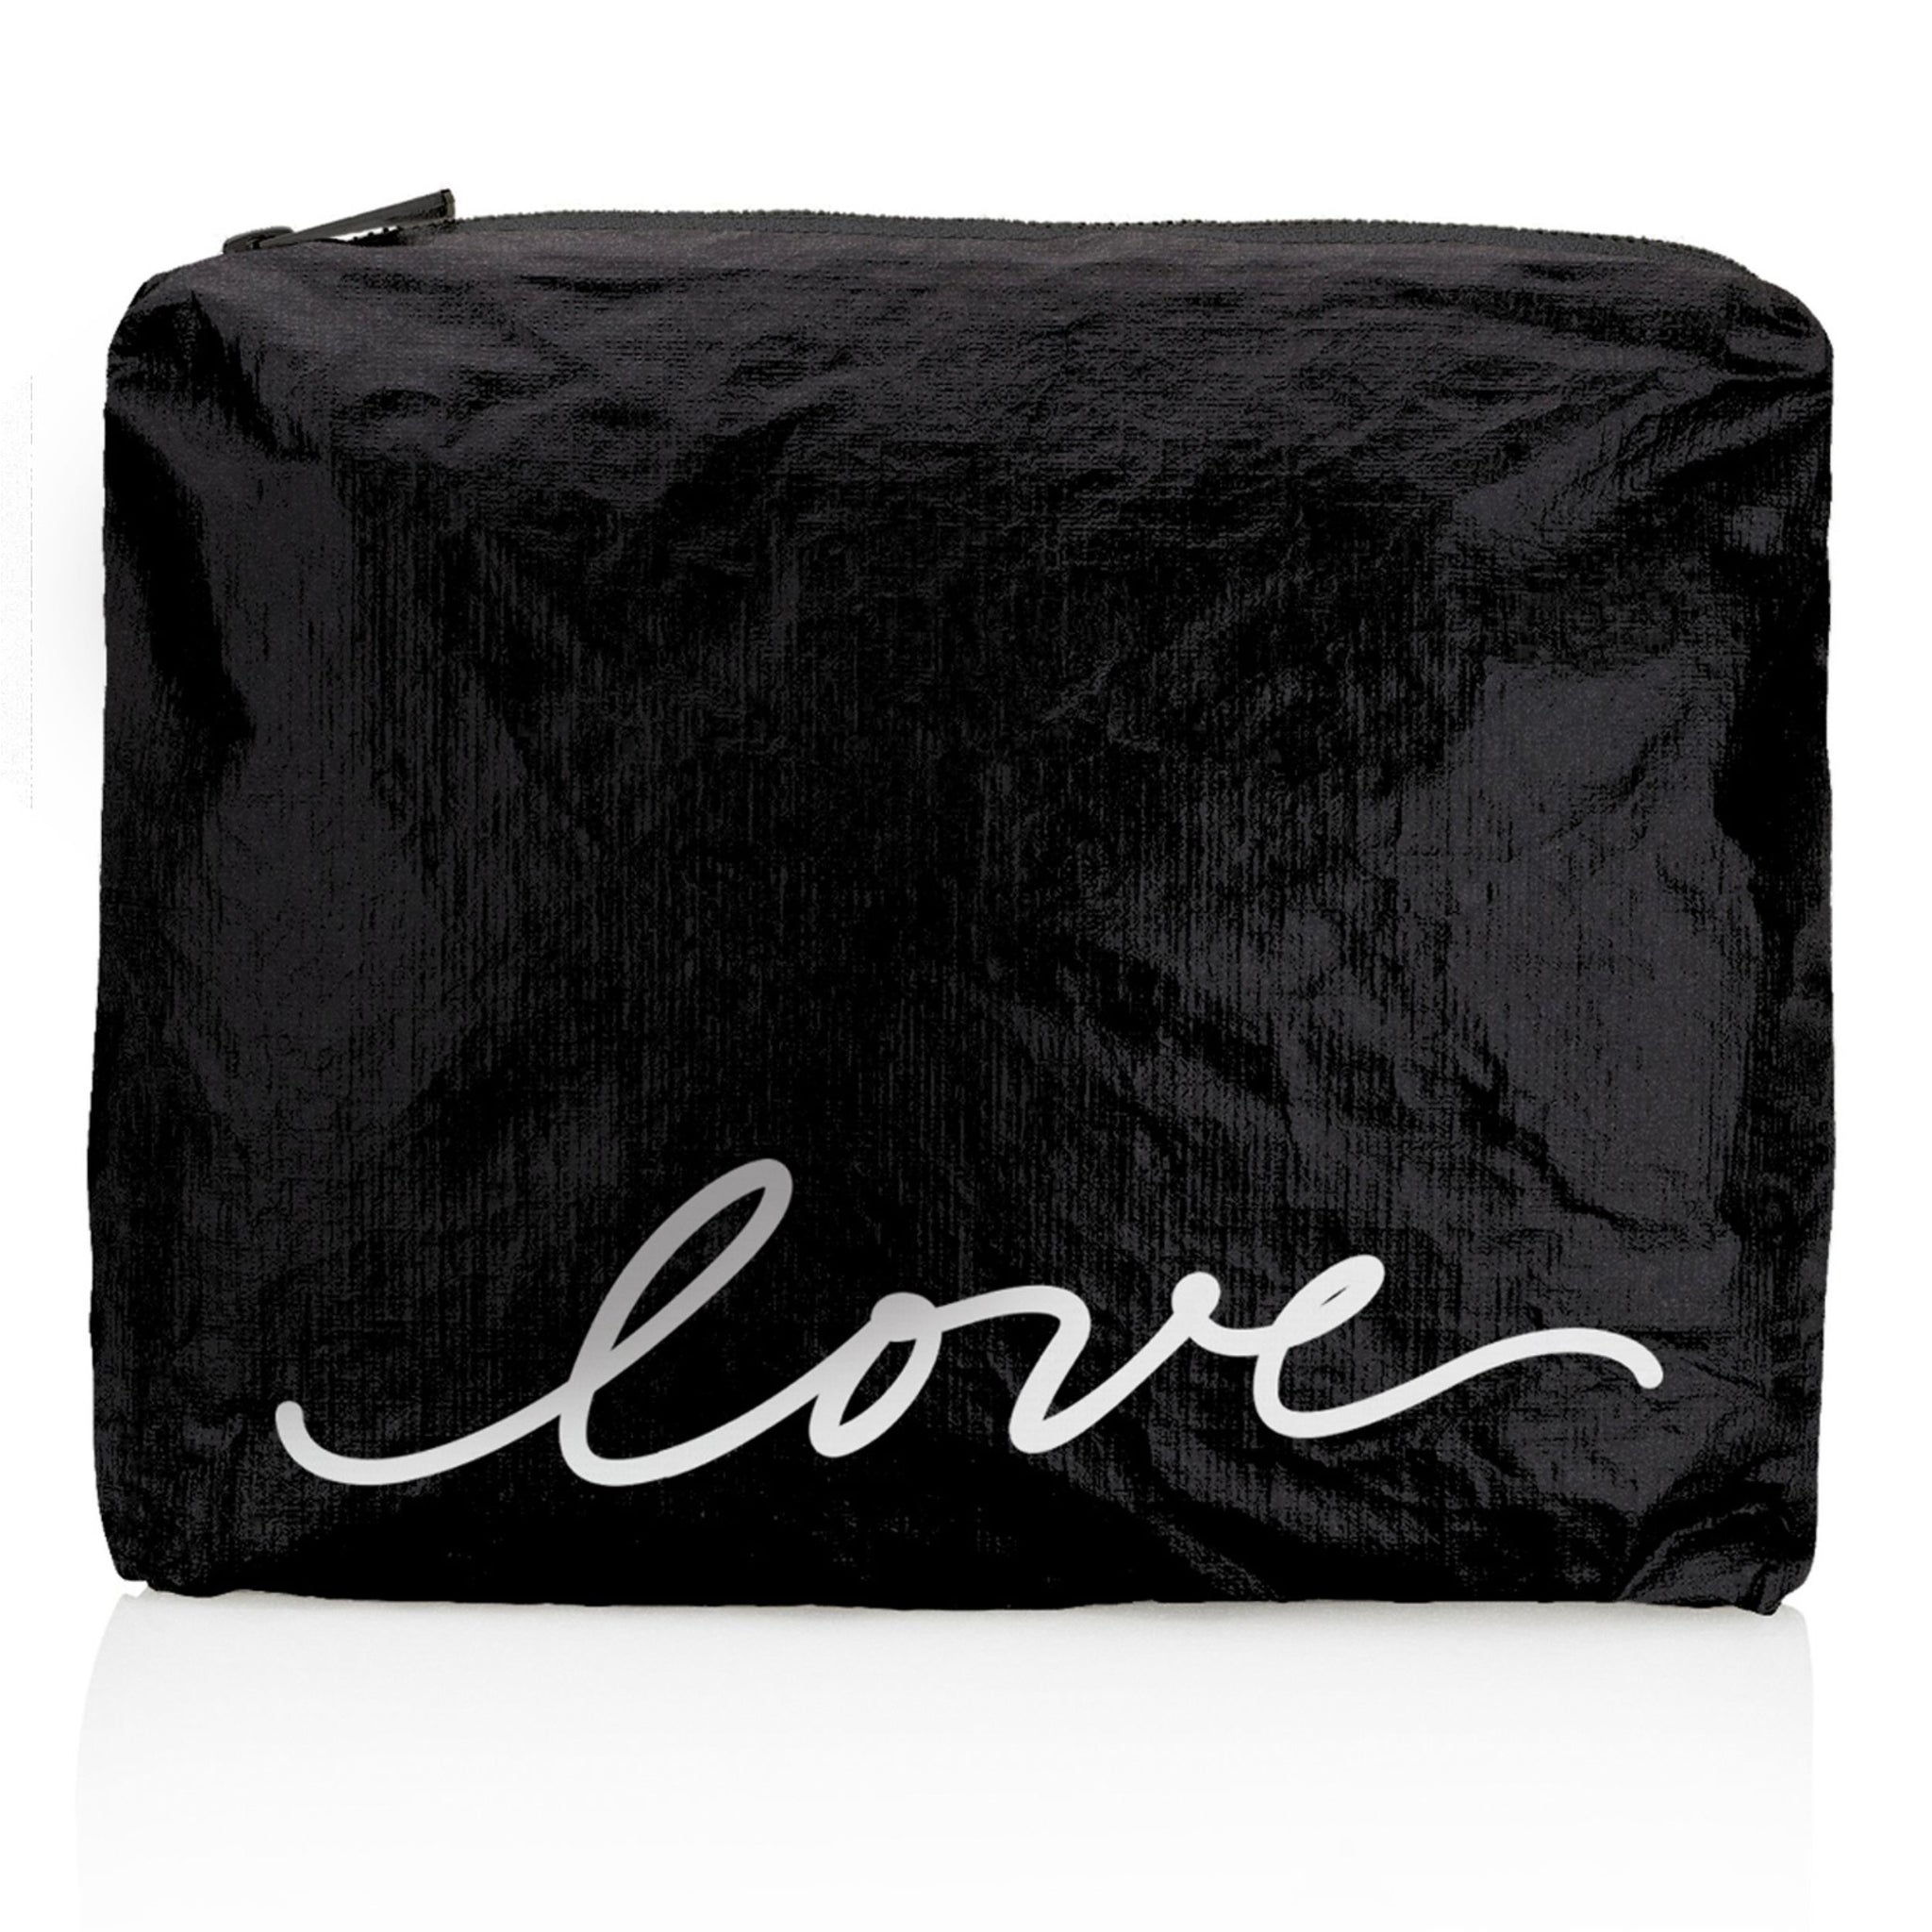 Medium Zipper Pack in Shimmer Black with White Script "love"